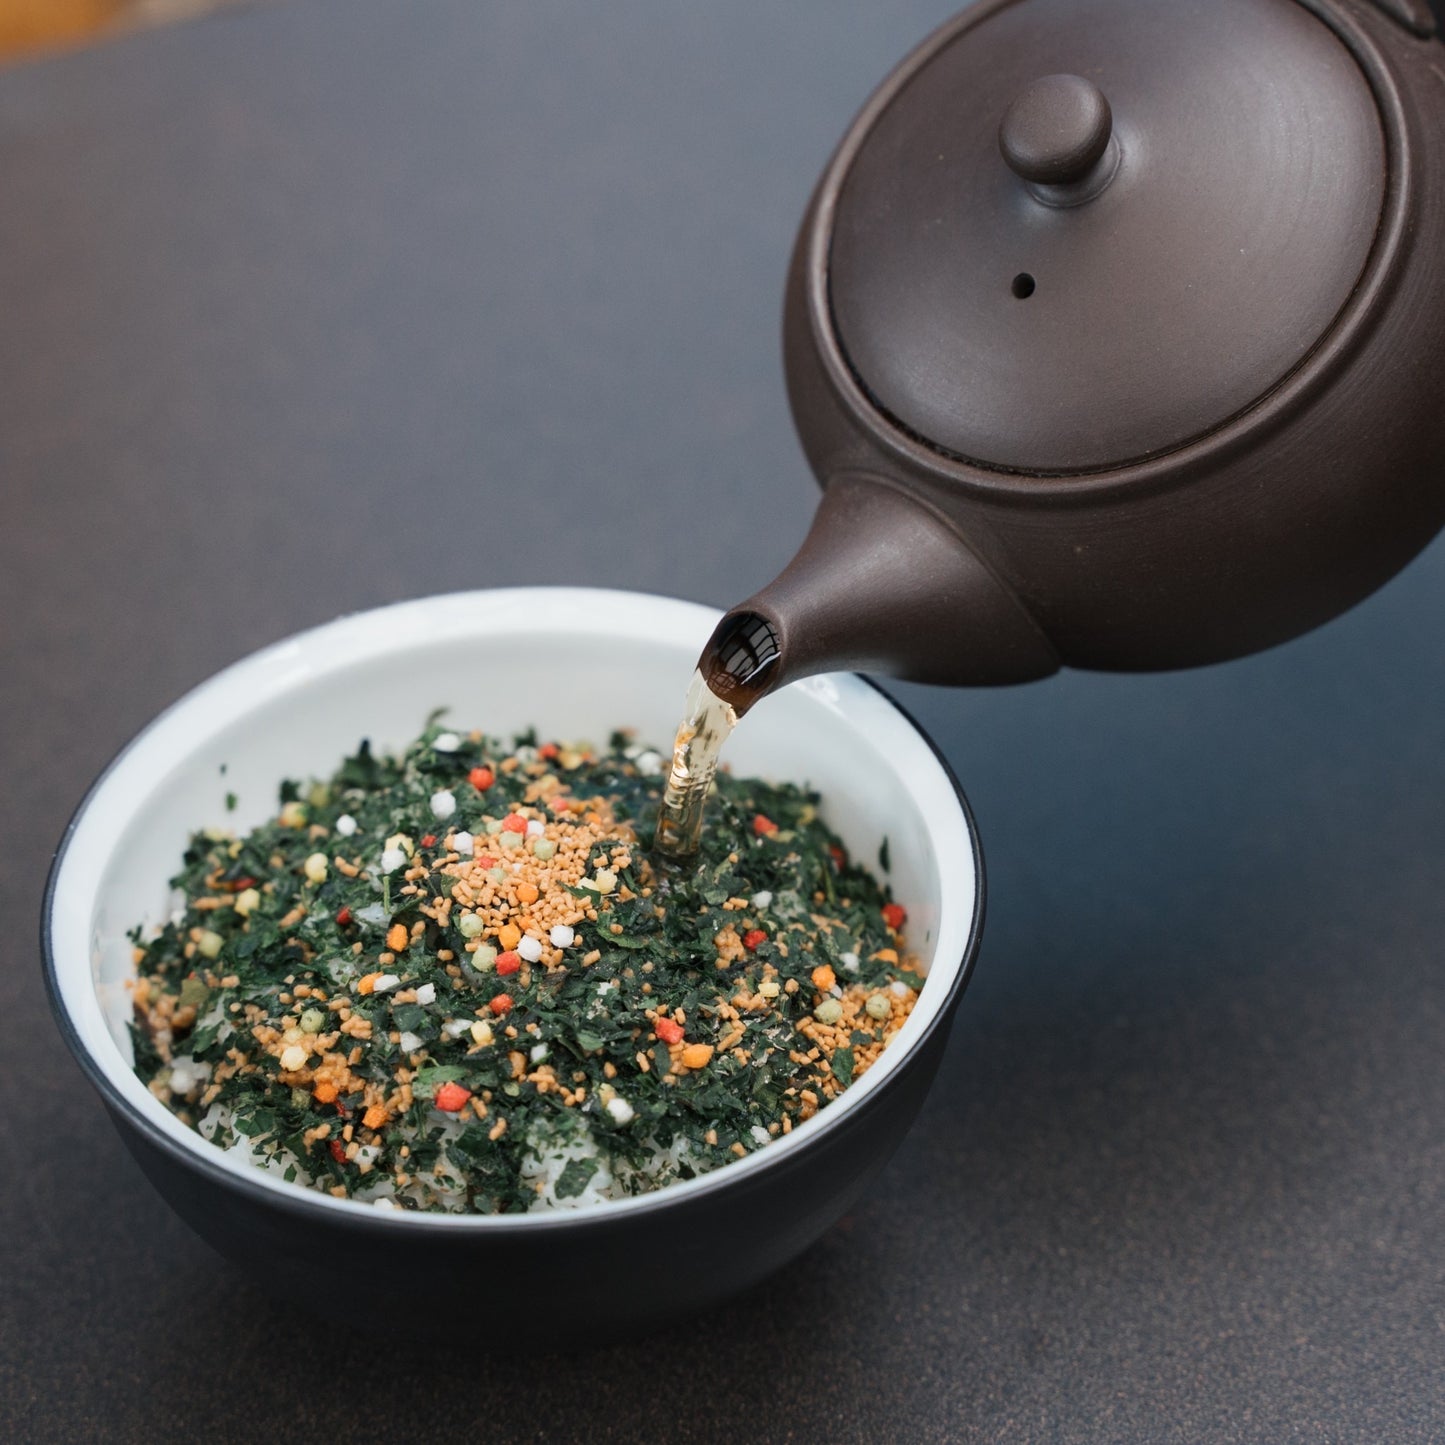 【ギフトおすすめ】【食べられる茶葉使用】お茶屋の作るお茶漬けの素